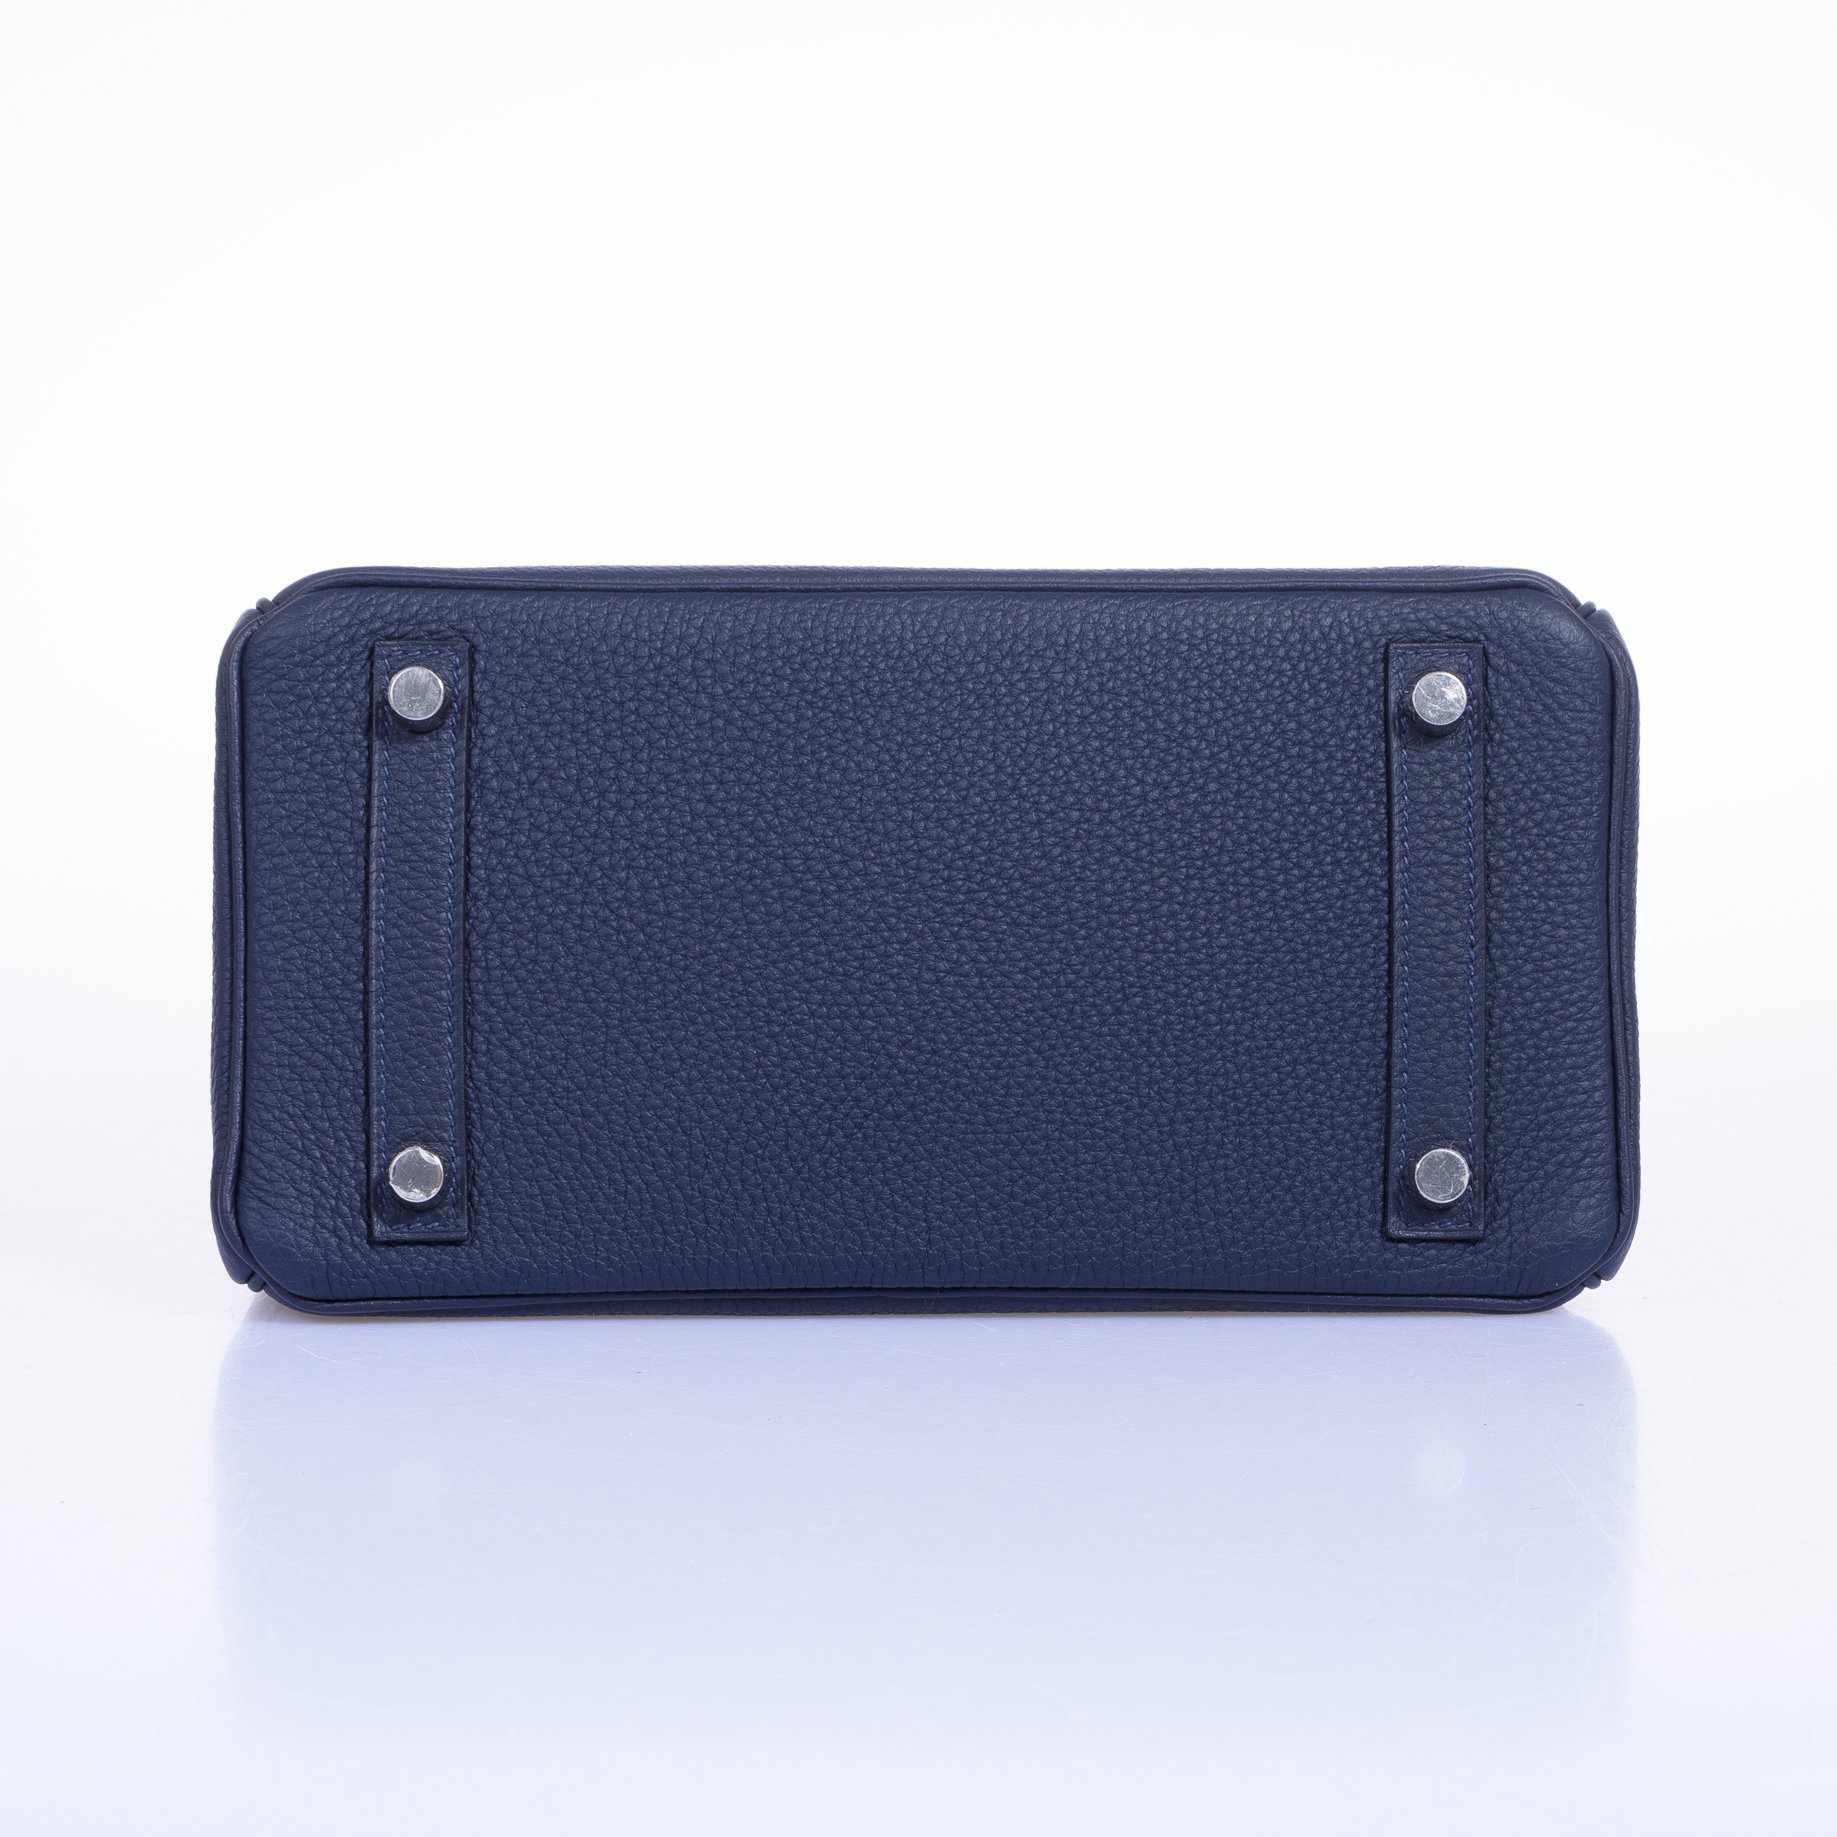 Hermès Birkin 25 Blue Indigo Togo Palladium Hardware